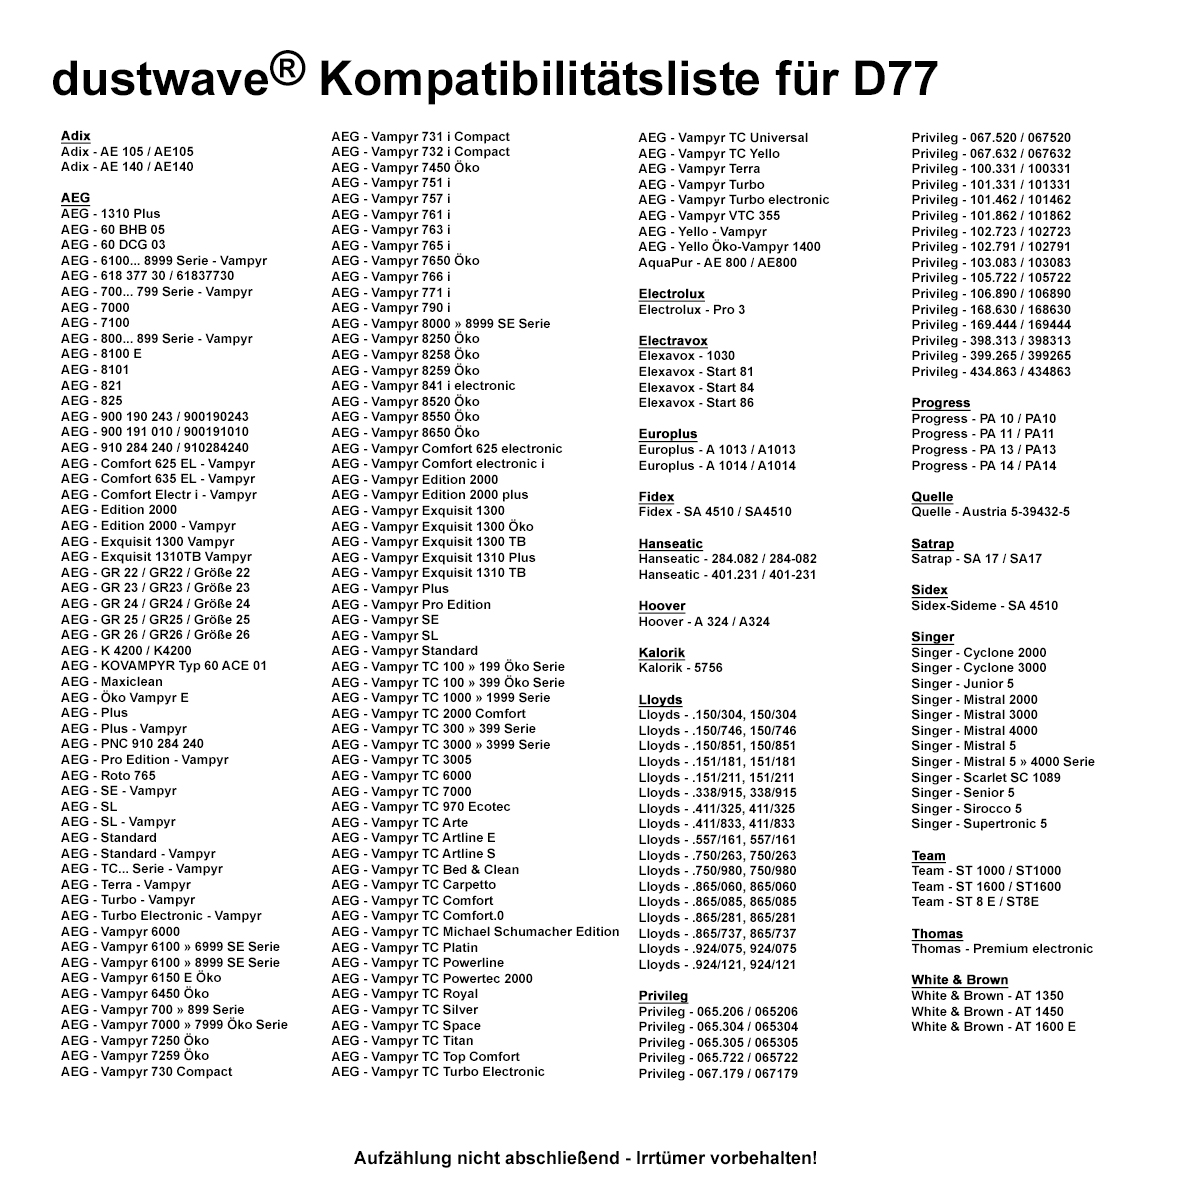 Dustwave® 20 Staubsaugerbeutel für AEG Vampyr 7203 Electronic - hocheffizient, mehrlagiges Mikrovlies mit Hygieneverschluss - Made in Germany